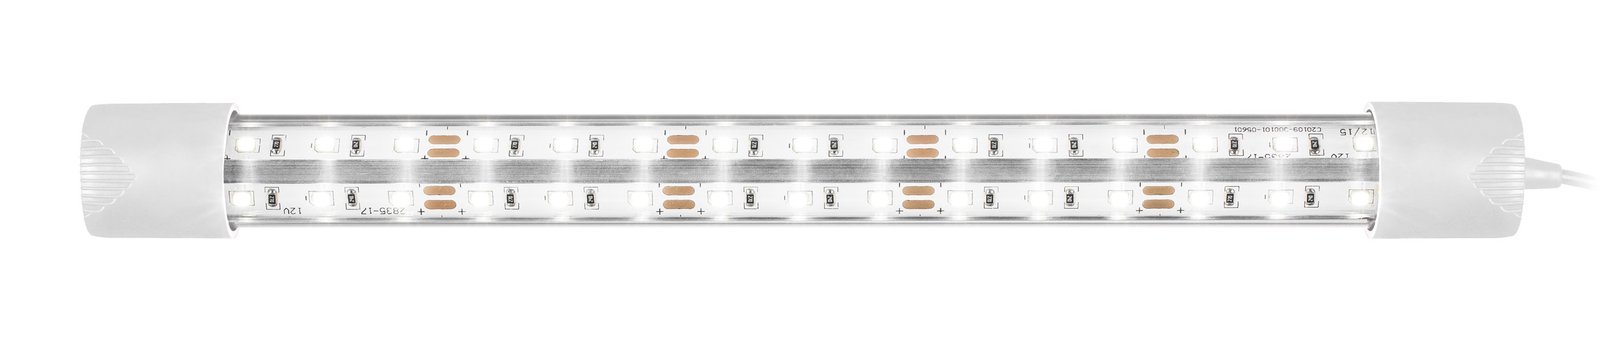 pol pl Pokrywa aluminiowa Platino 80x35 prosta z oswietleniem LED Expert 15W 418 5